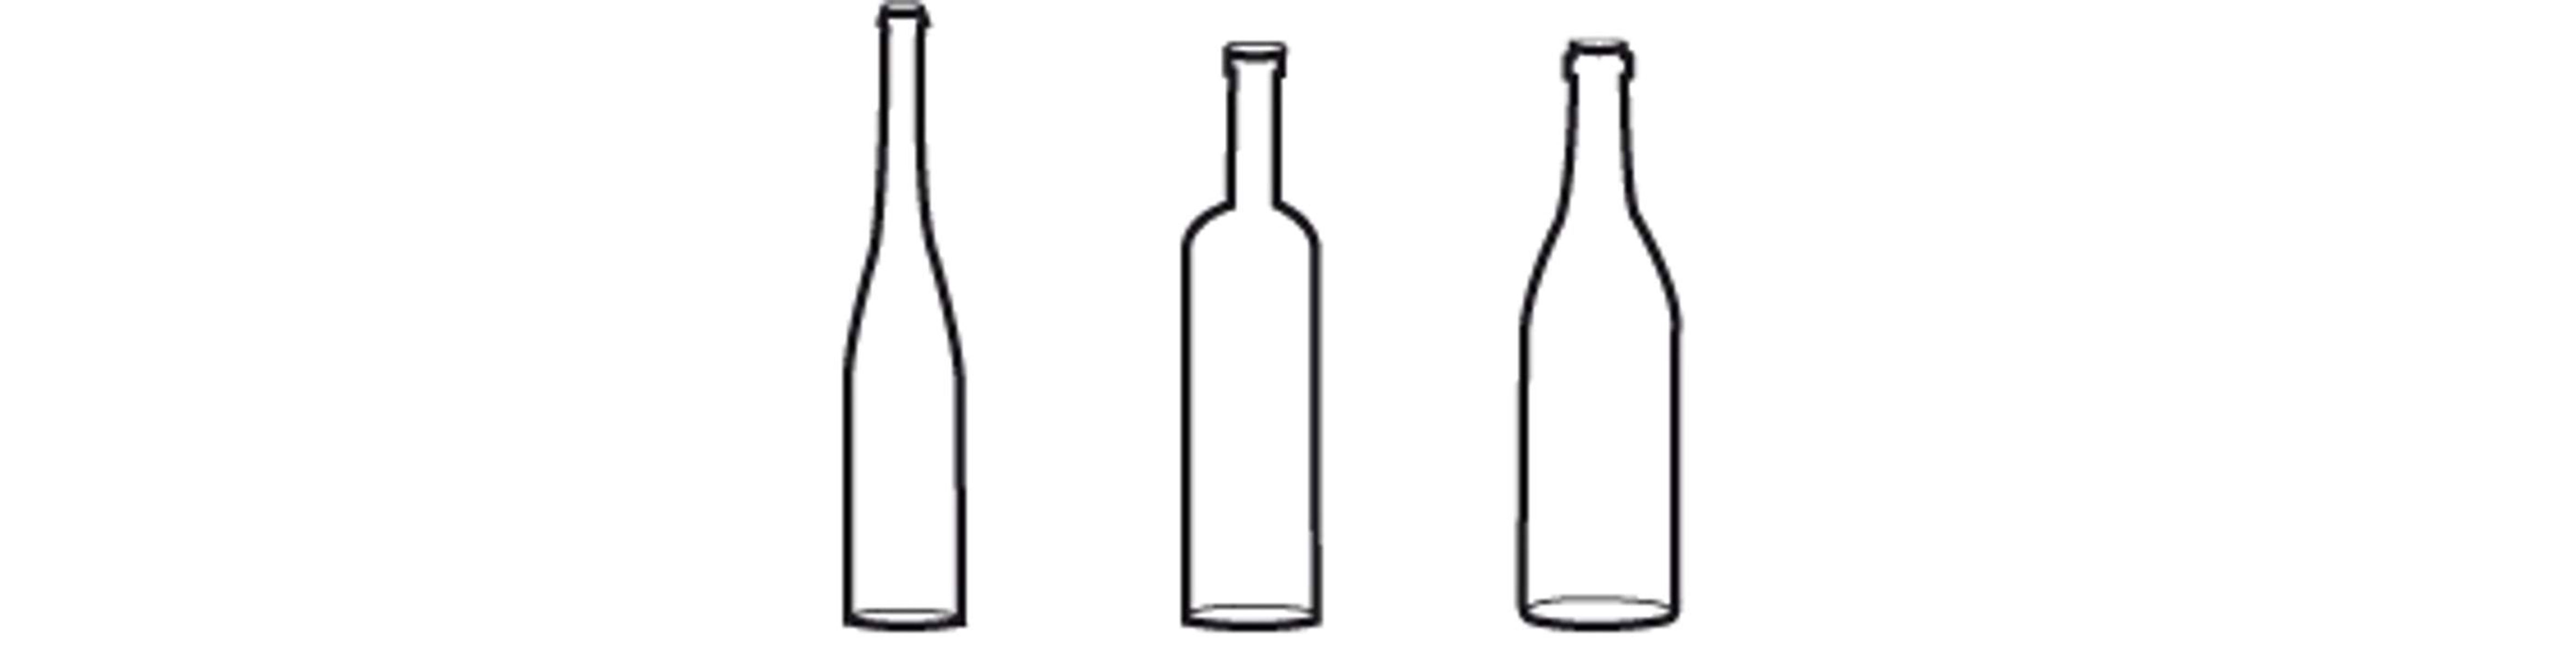 De gauche à droite : la flûte, la bordelaise, la bourguignonne